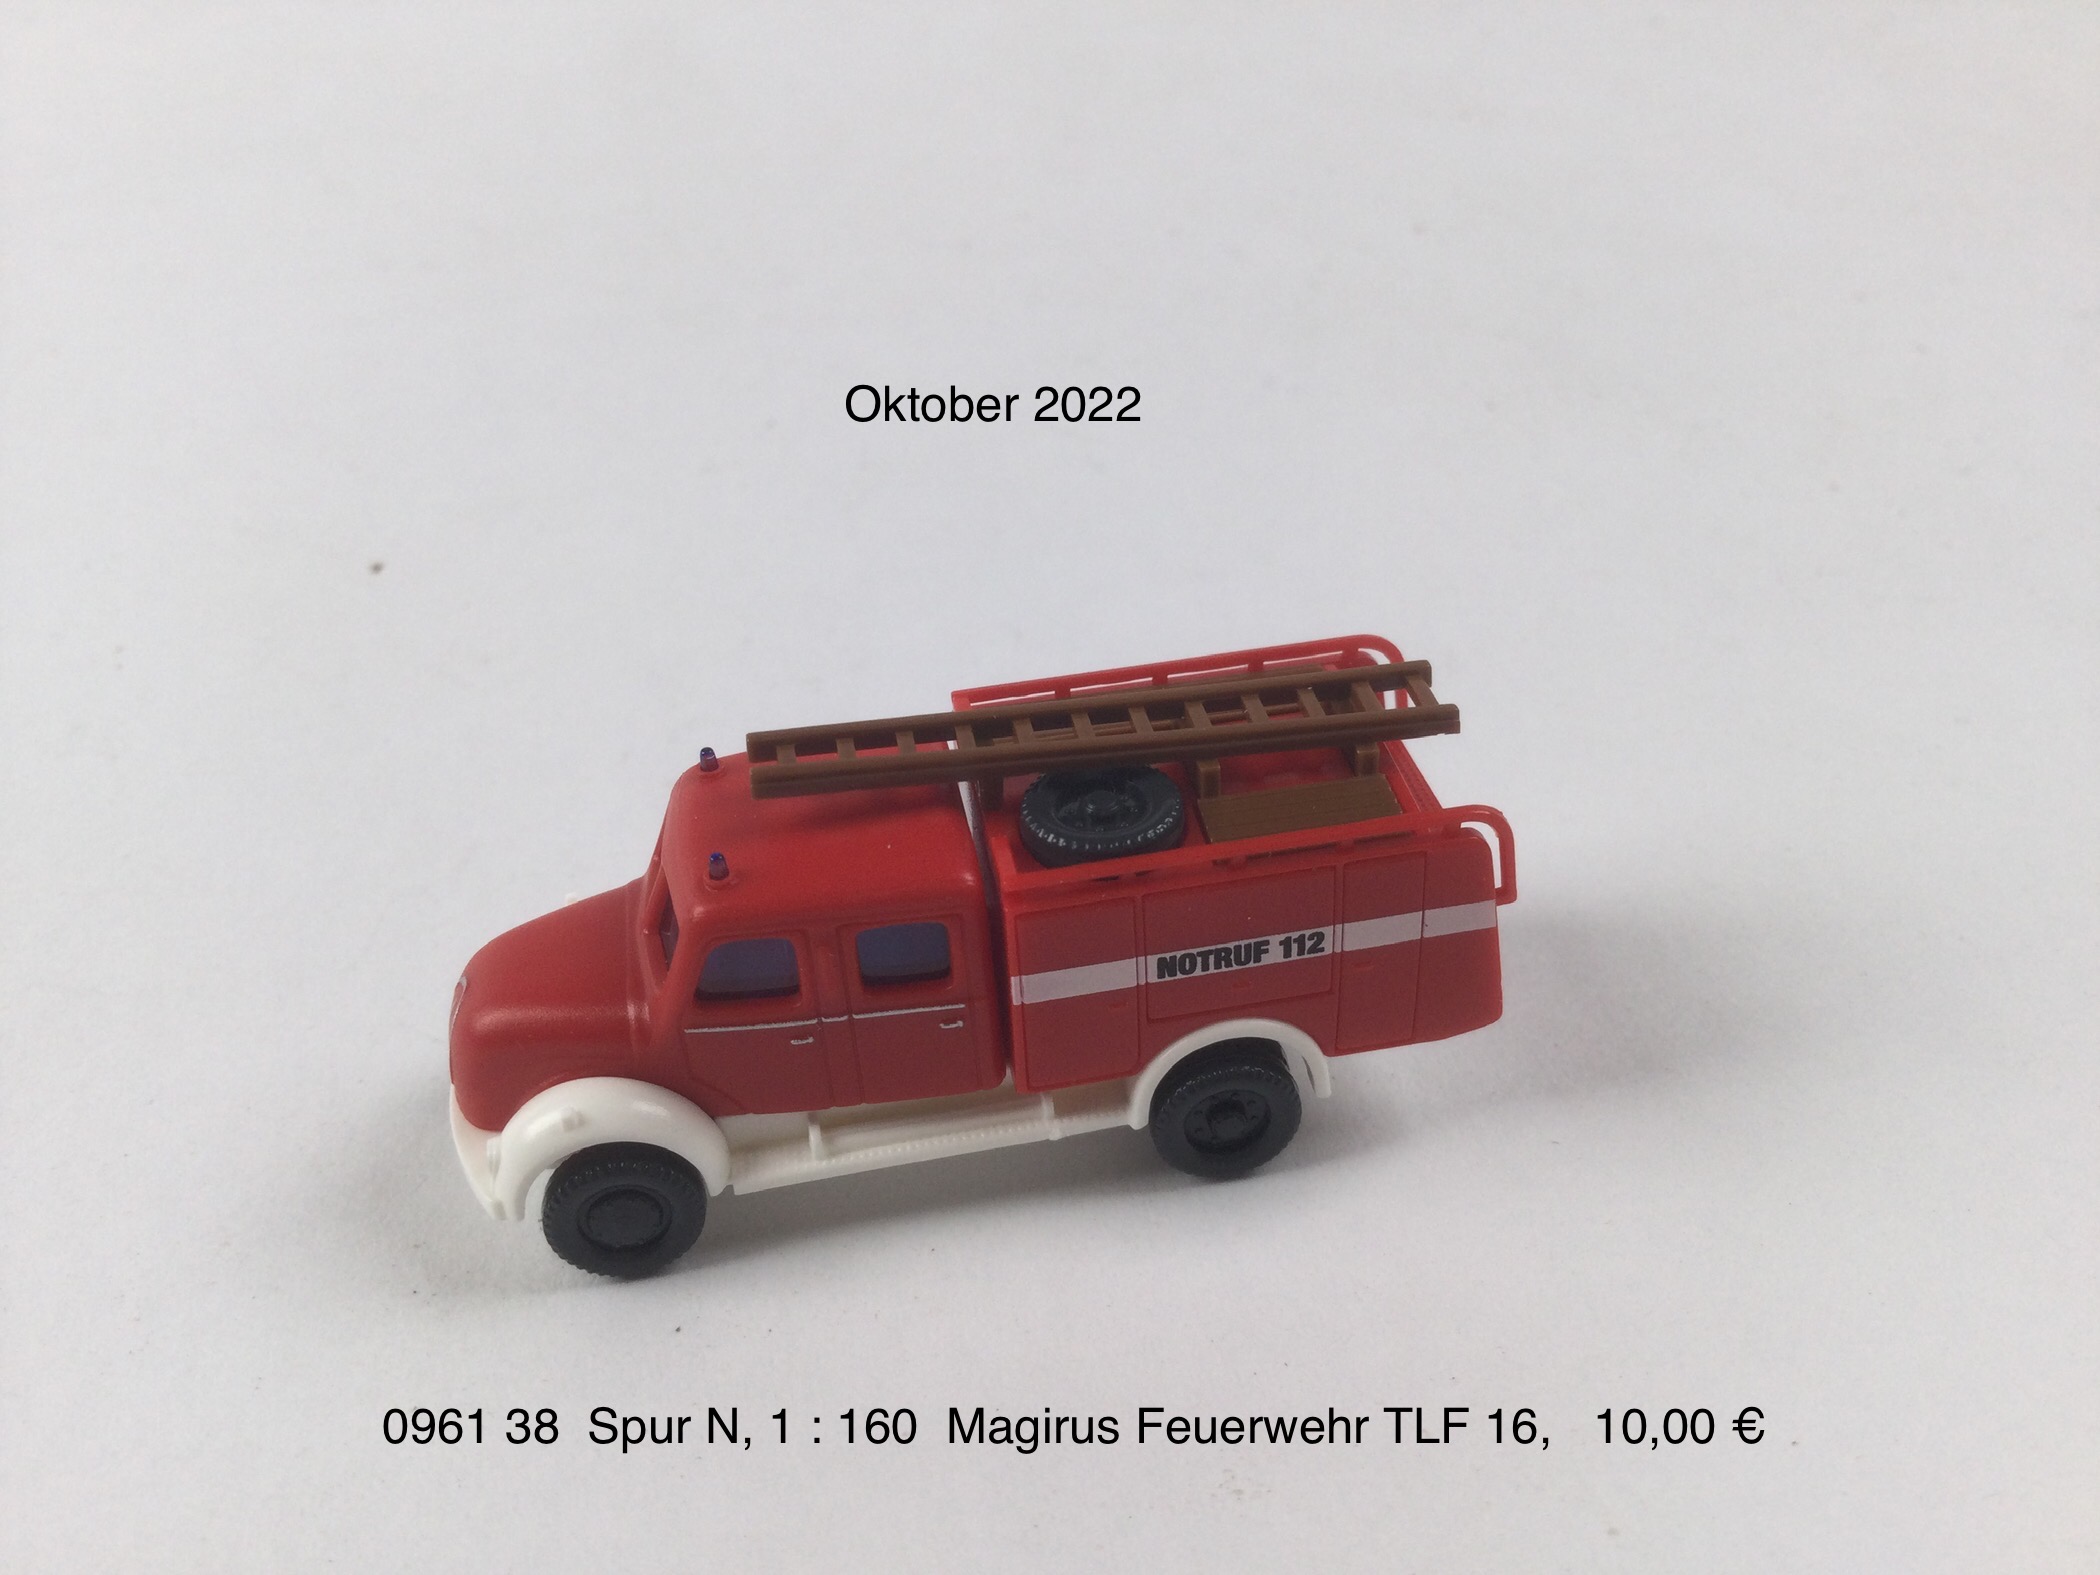 Magirus Feuerwehr TLF 16 "Spur N"